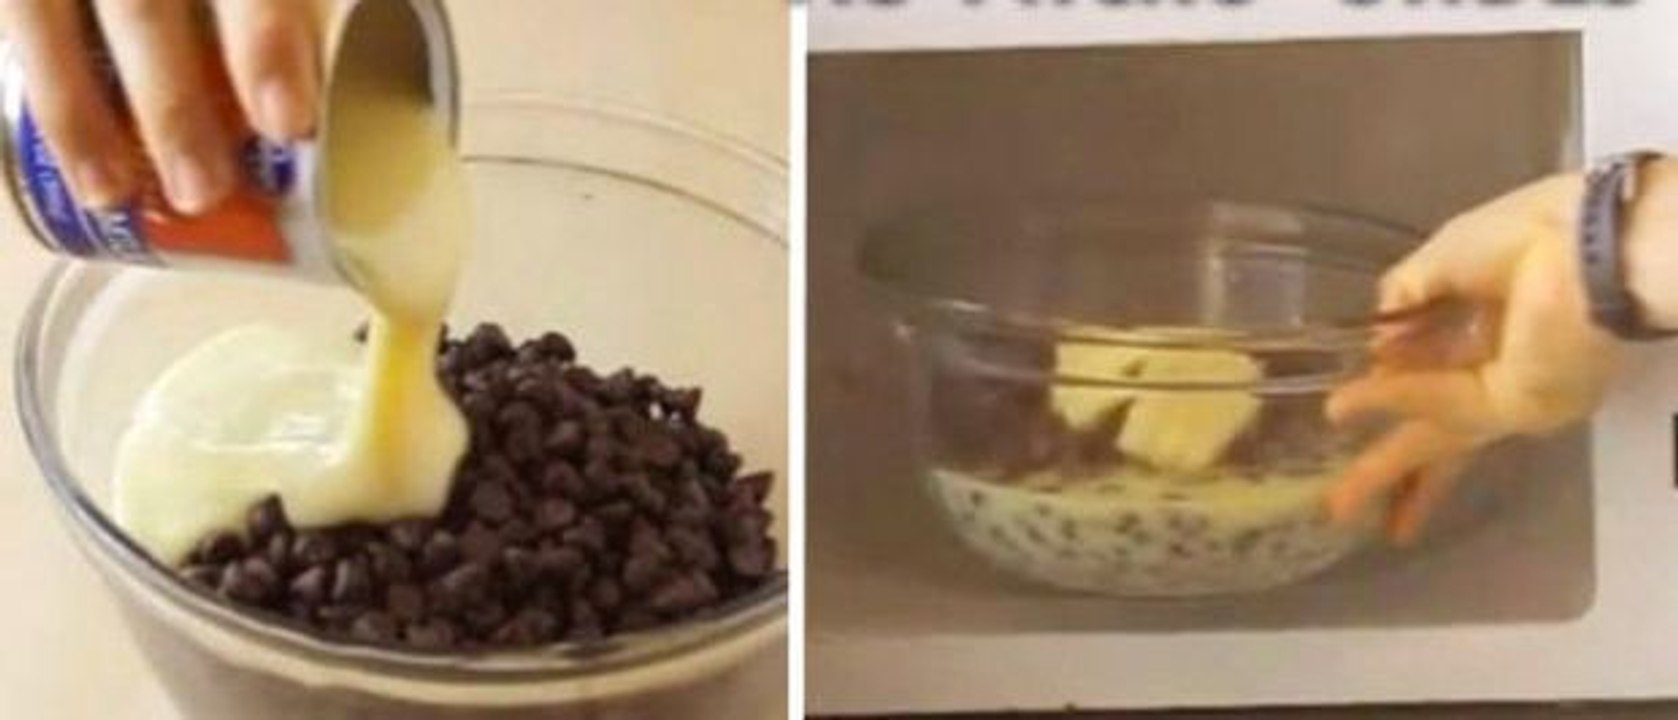 Um einen Chocolate Fudge zu machen, braucht man keinen Ofen. Eine Mikrowelle genügt mit dieser einfachen Technik.